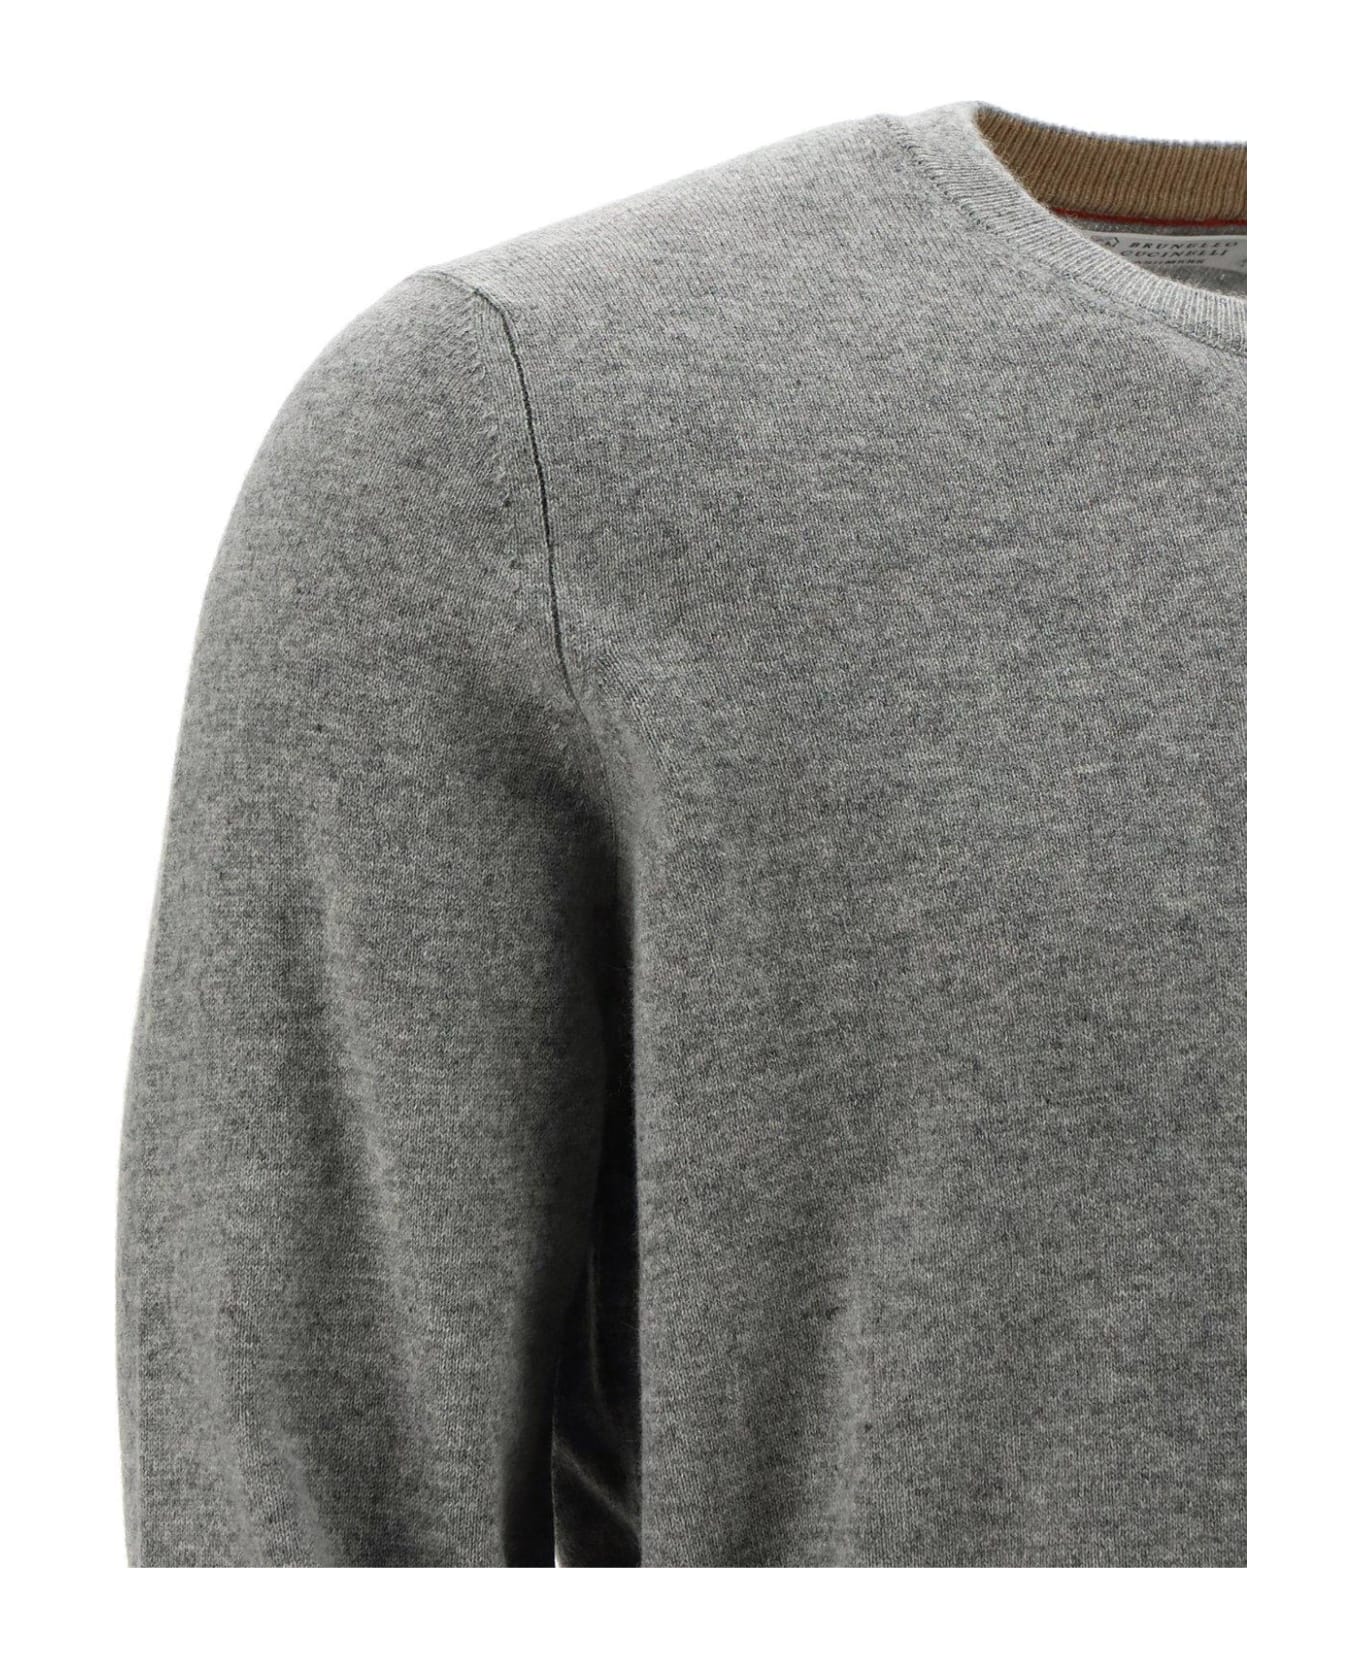 Brunello Cucinelli Crewneck Knit Sweater - Light Grey